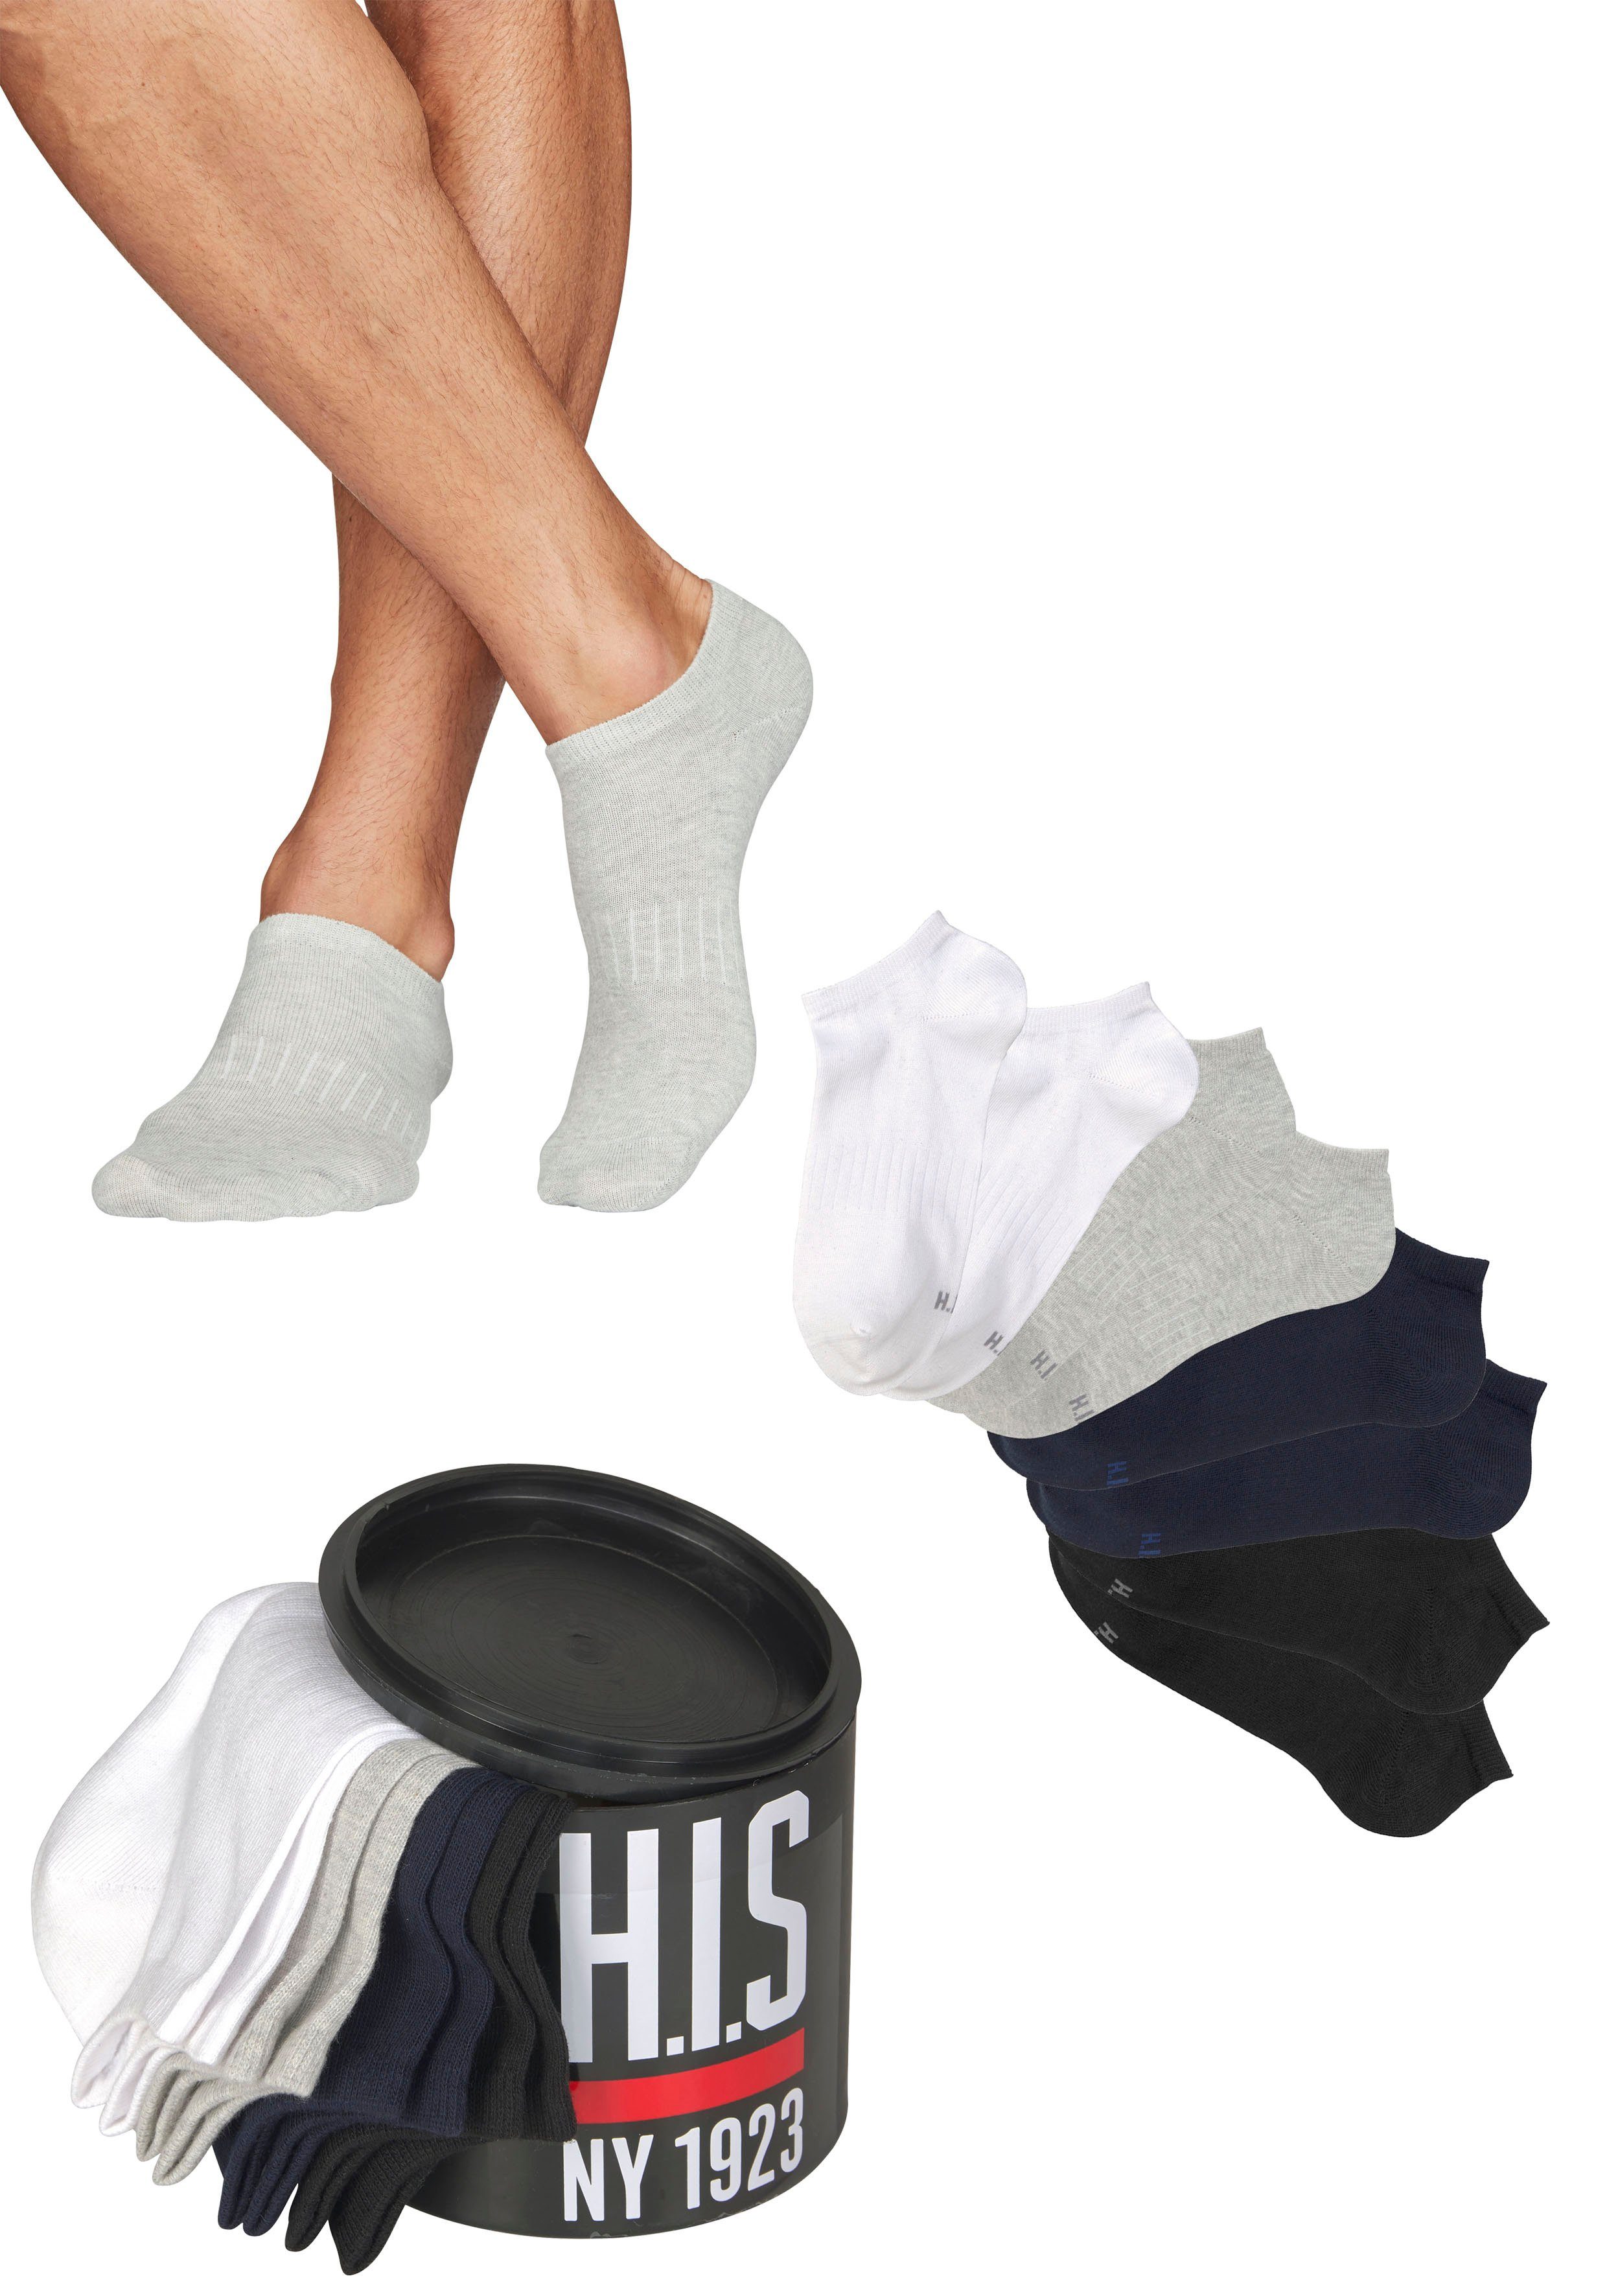 H.I.S Sneakersocken (Set, 2x in marine, schwarz 2x 8-Paar) 2x der hellgrau-meliert, weiß, 2x Geschenkdose